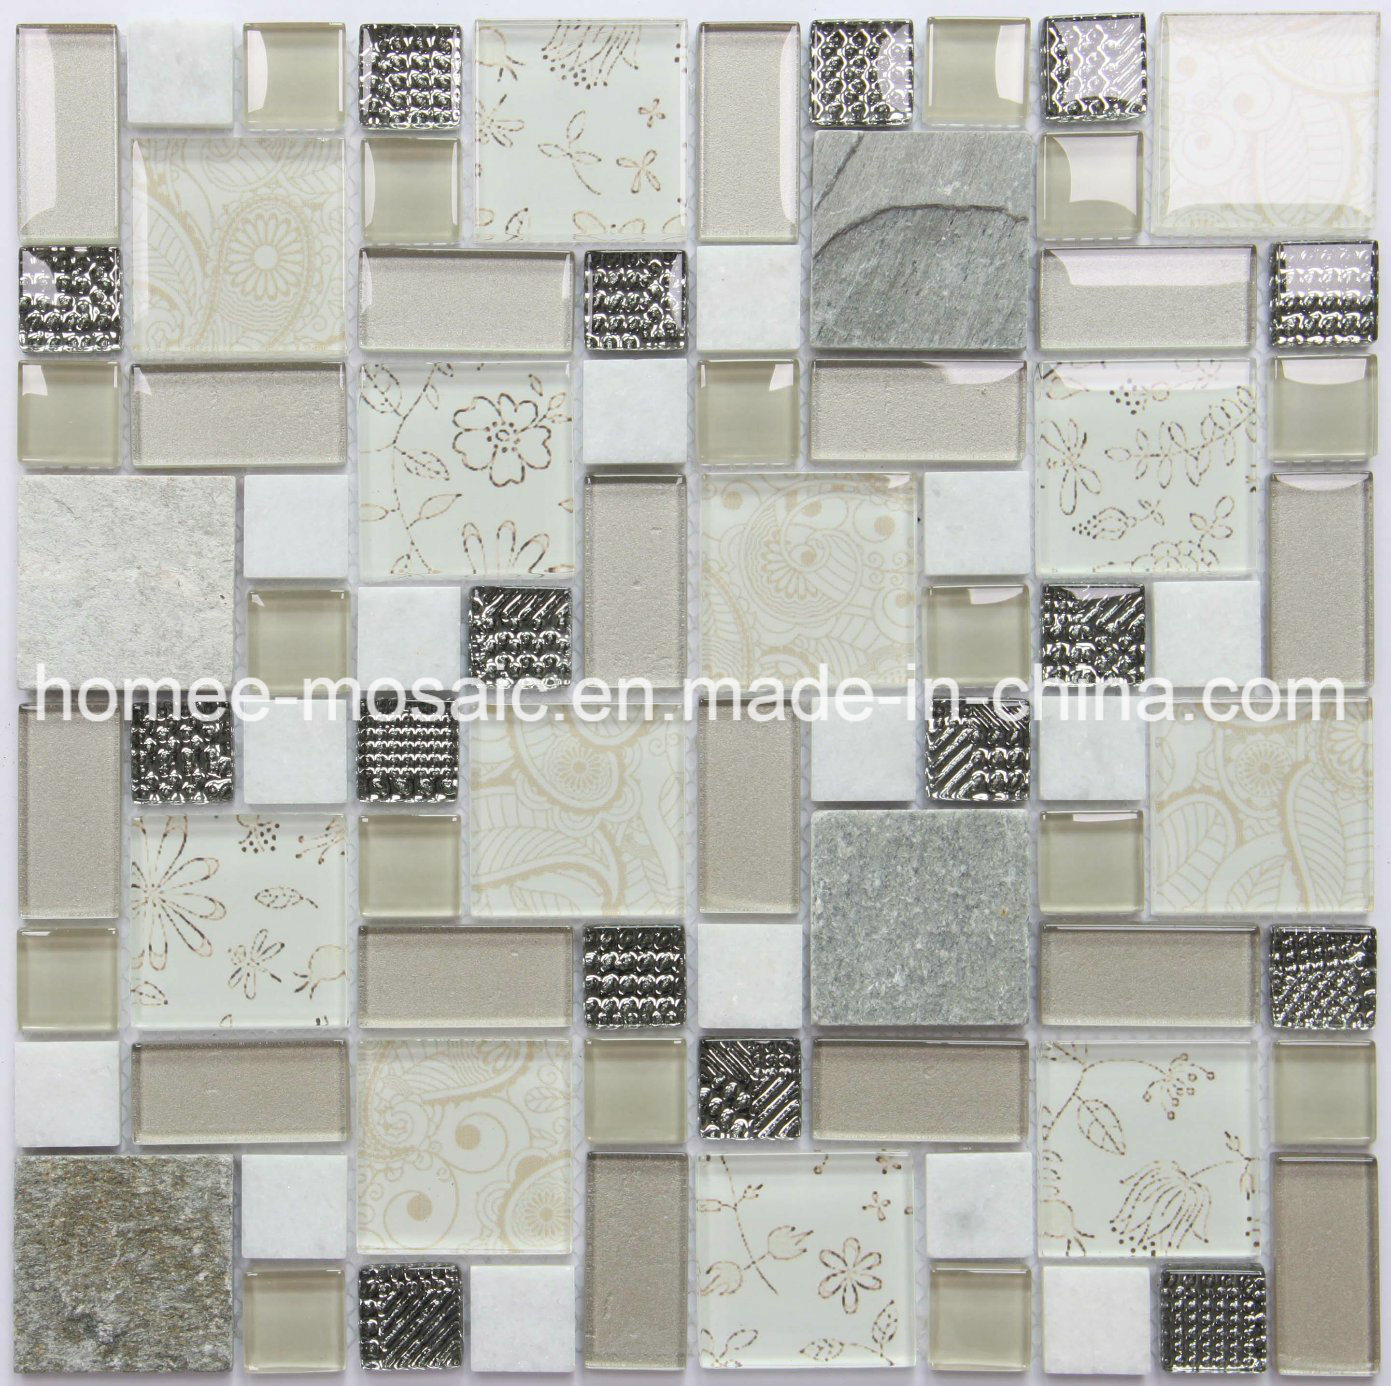 Wholesale Backsplash Factory Glass Stone Mosaic Tile